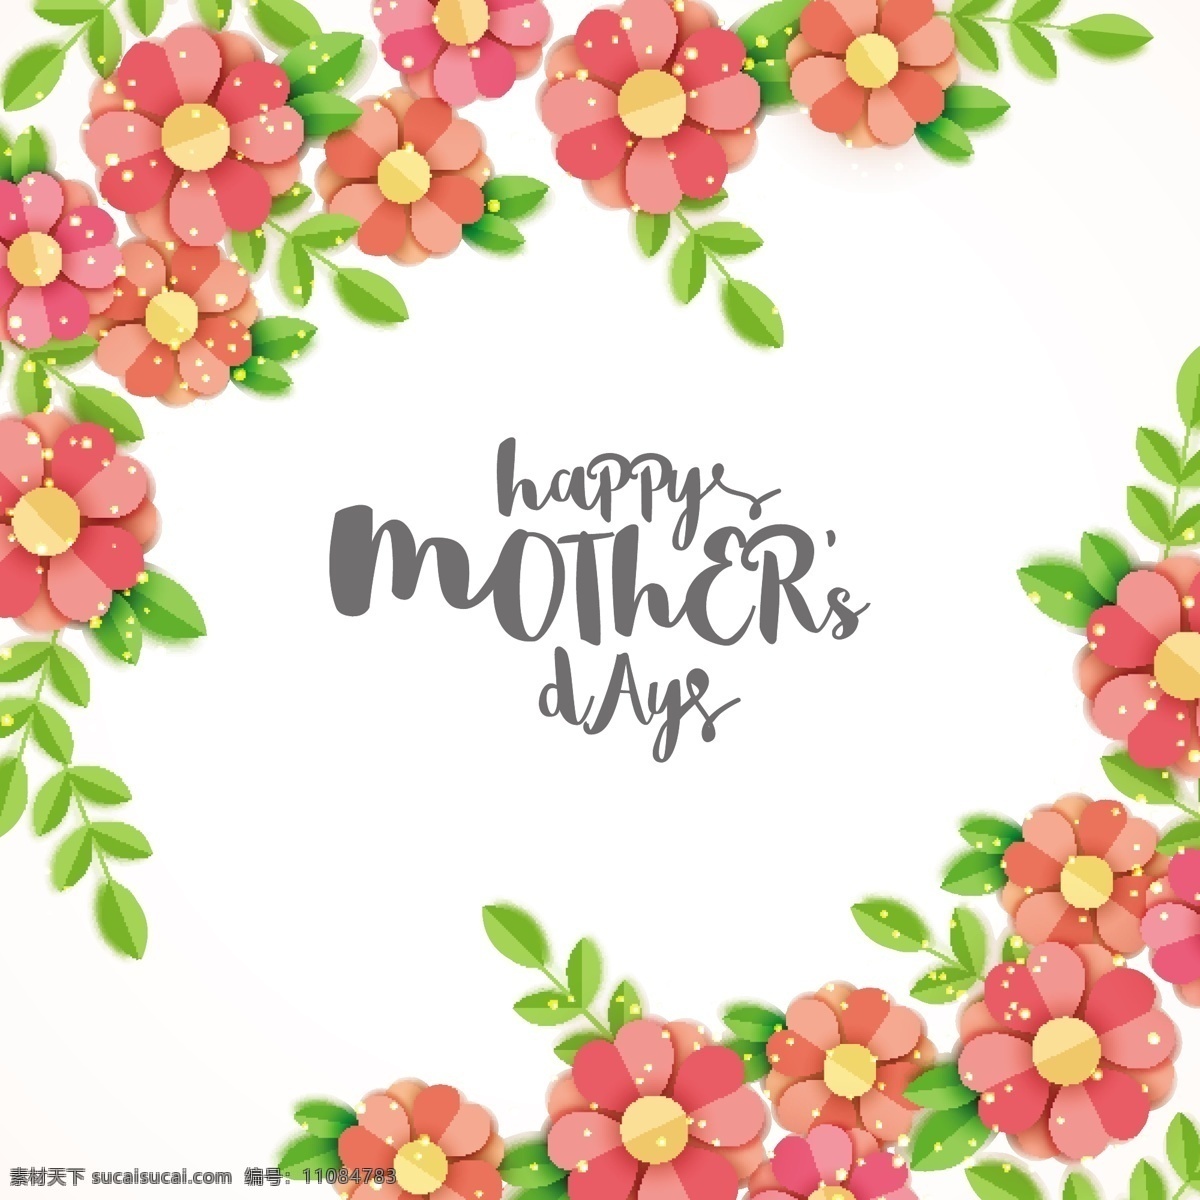 母亲节 背景 花卉 爱情 家庭 花卉背景 壁纸 色彩 庆祝 母亲 丰富多彩 爱的背景